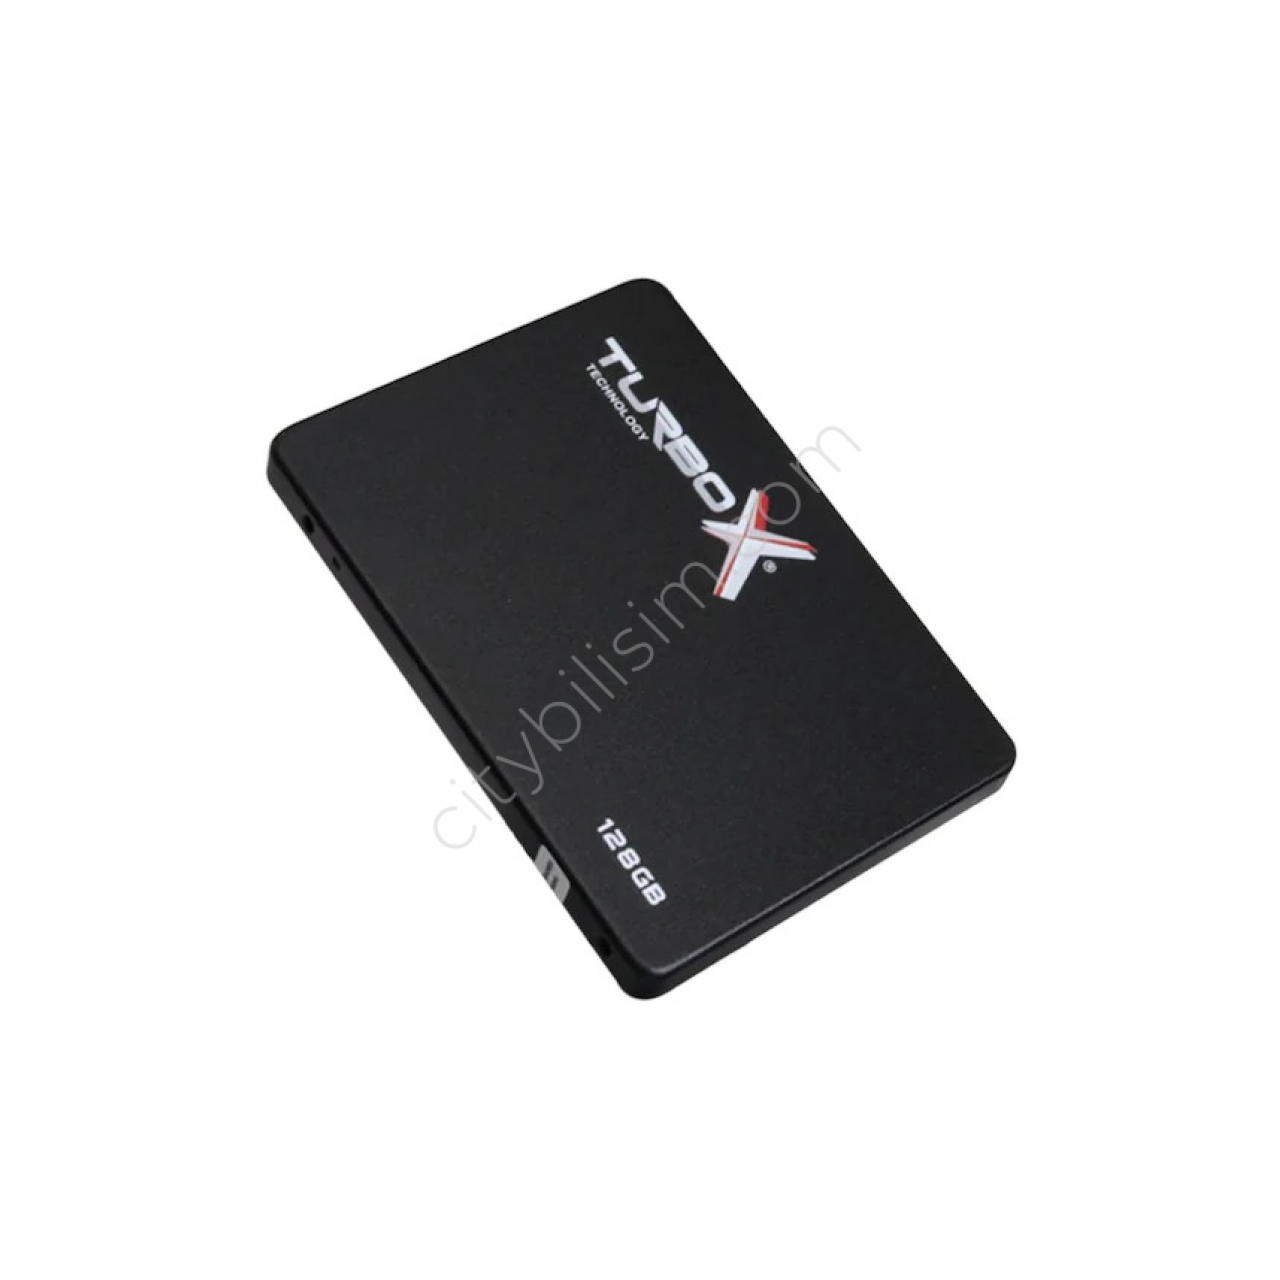 Turbox RaceTrap R KTA320 2.5" 128 GB 520/400 SATA 3 SSD